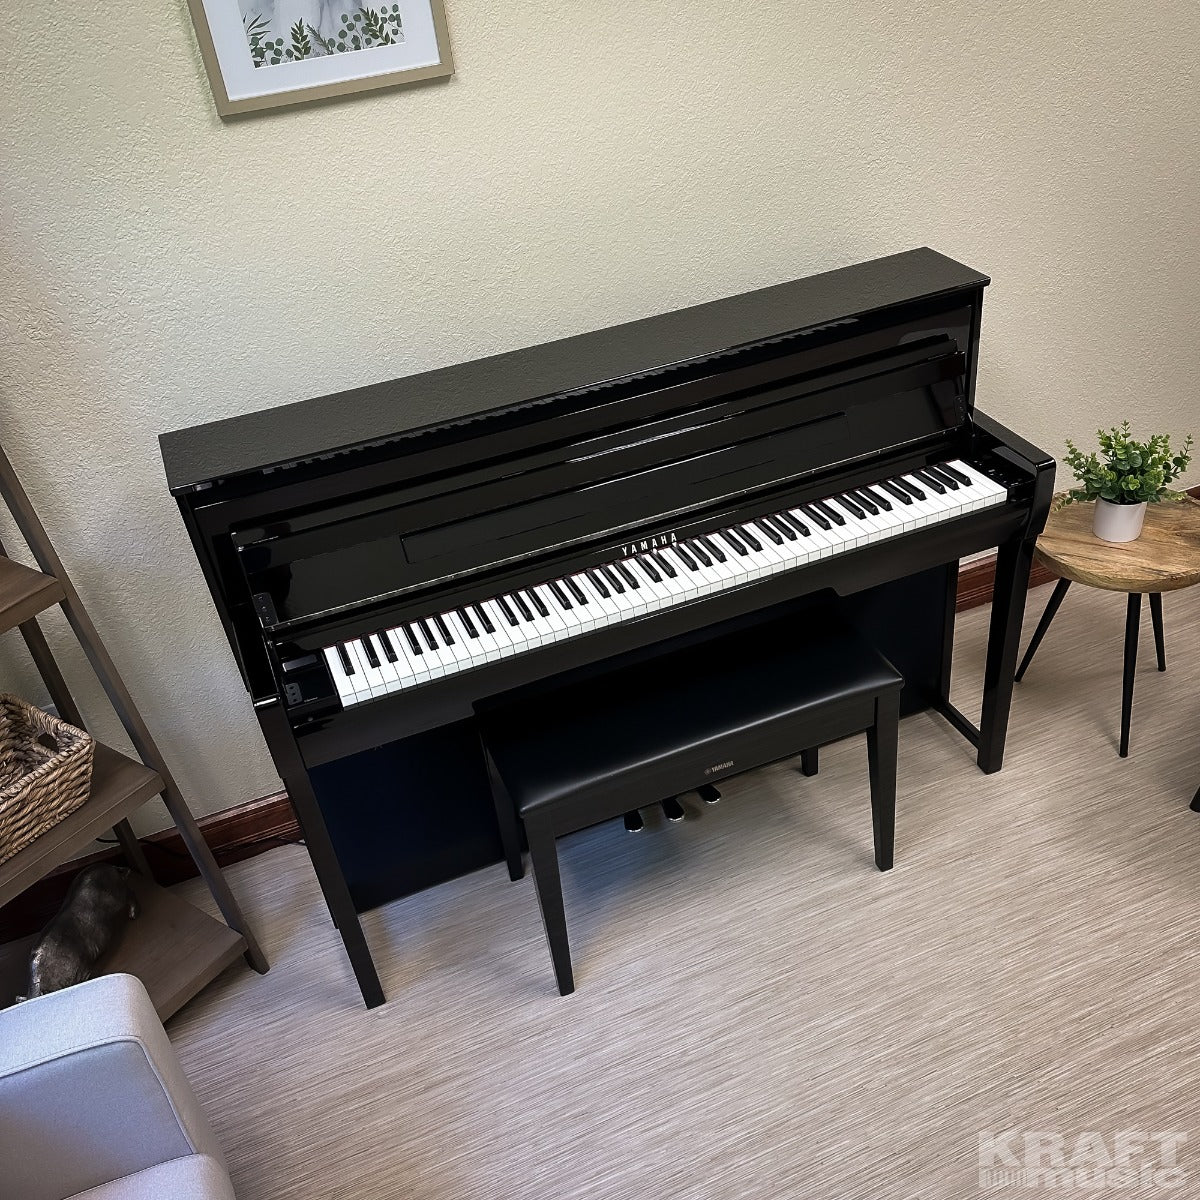 Yamaha Clavinova CLP-785 Digital Piano - Polished Ebony - Upper Right View